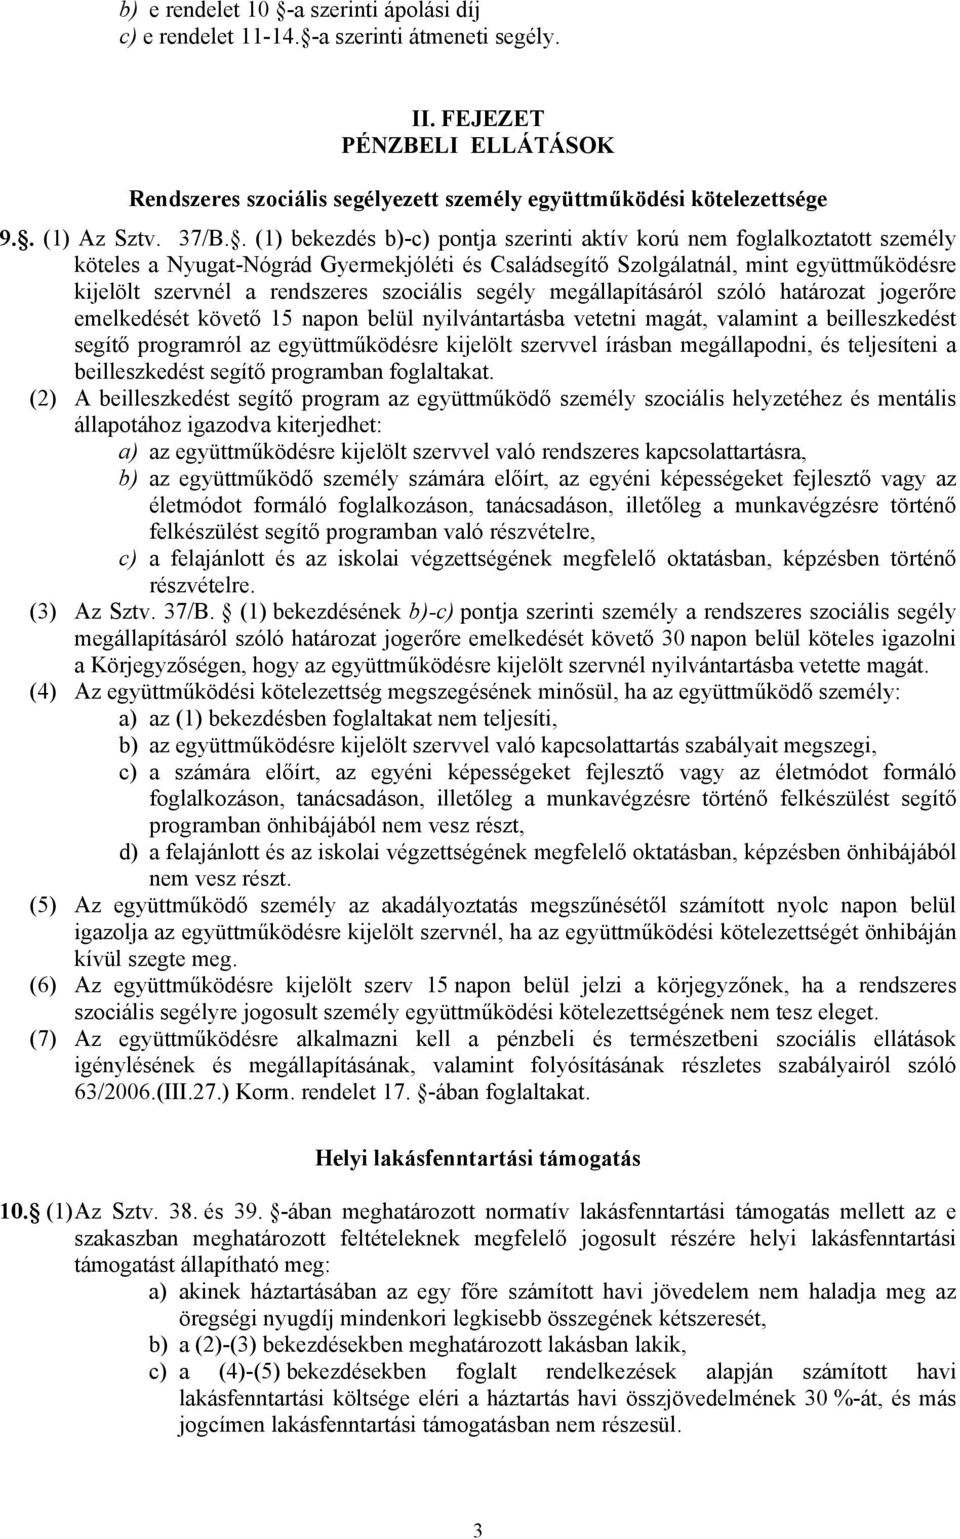 . (1) bekezdés b)-c) pontja szerinti aktív korú nem foglalkoztatott személy köteles a Nyugat-Nógrád Gyermekjóléti és Családsegítő Szolgálatnál, mint együttműködésre kijelölt szervnél a rendszeres